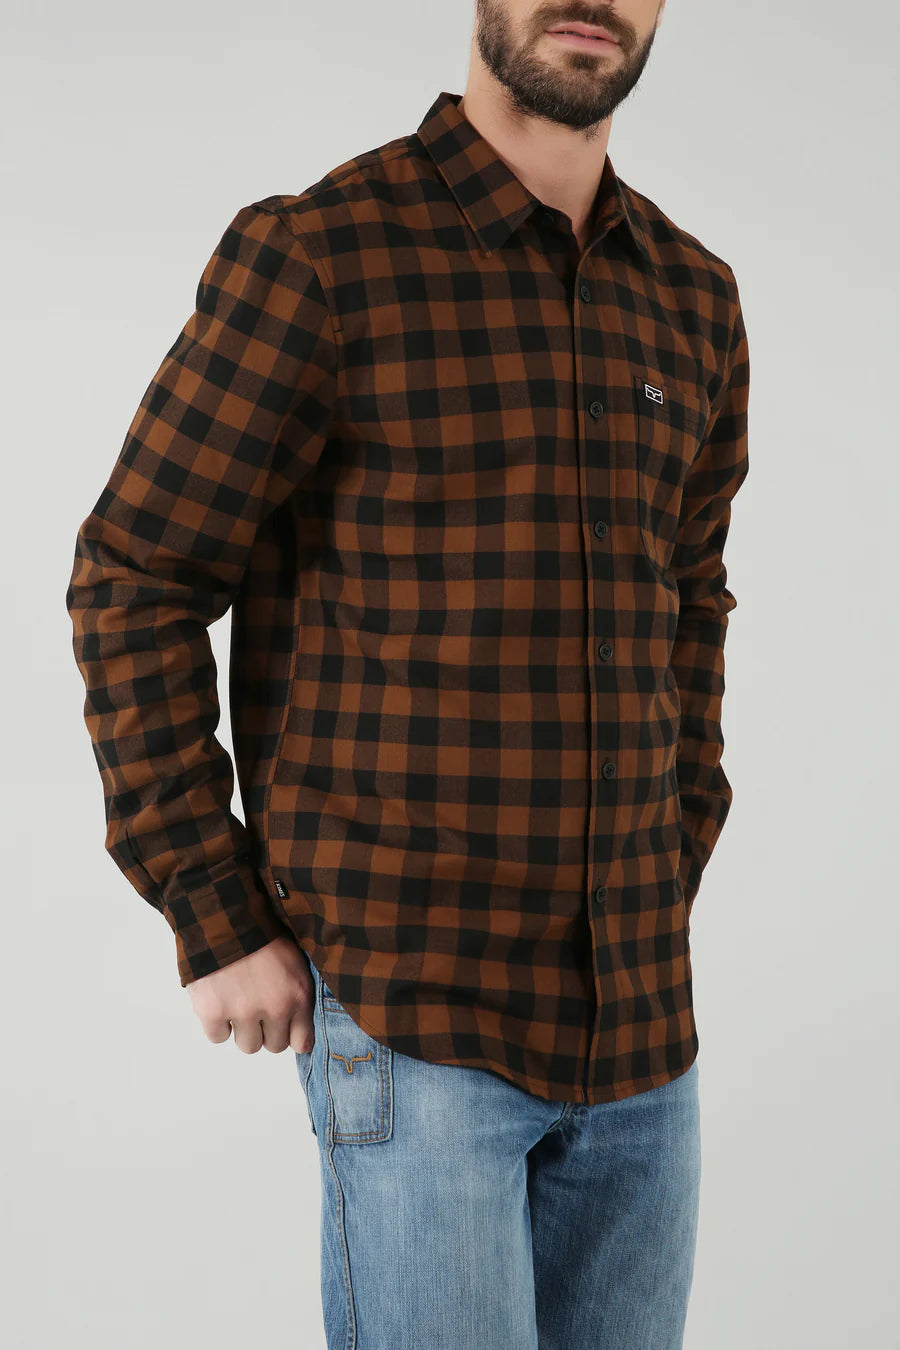 Kimes Ranch Men's Garrison Long Sleeve Brown Plaid Button Down Shirt